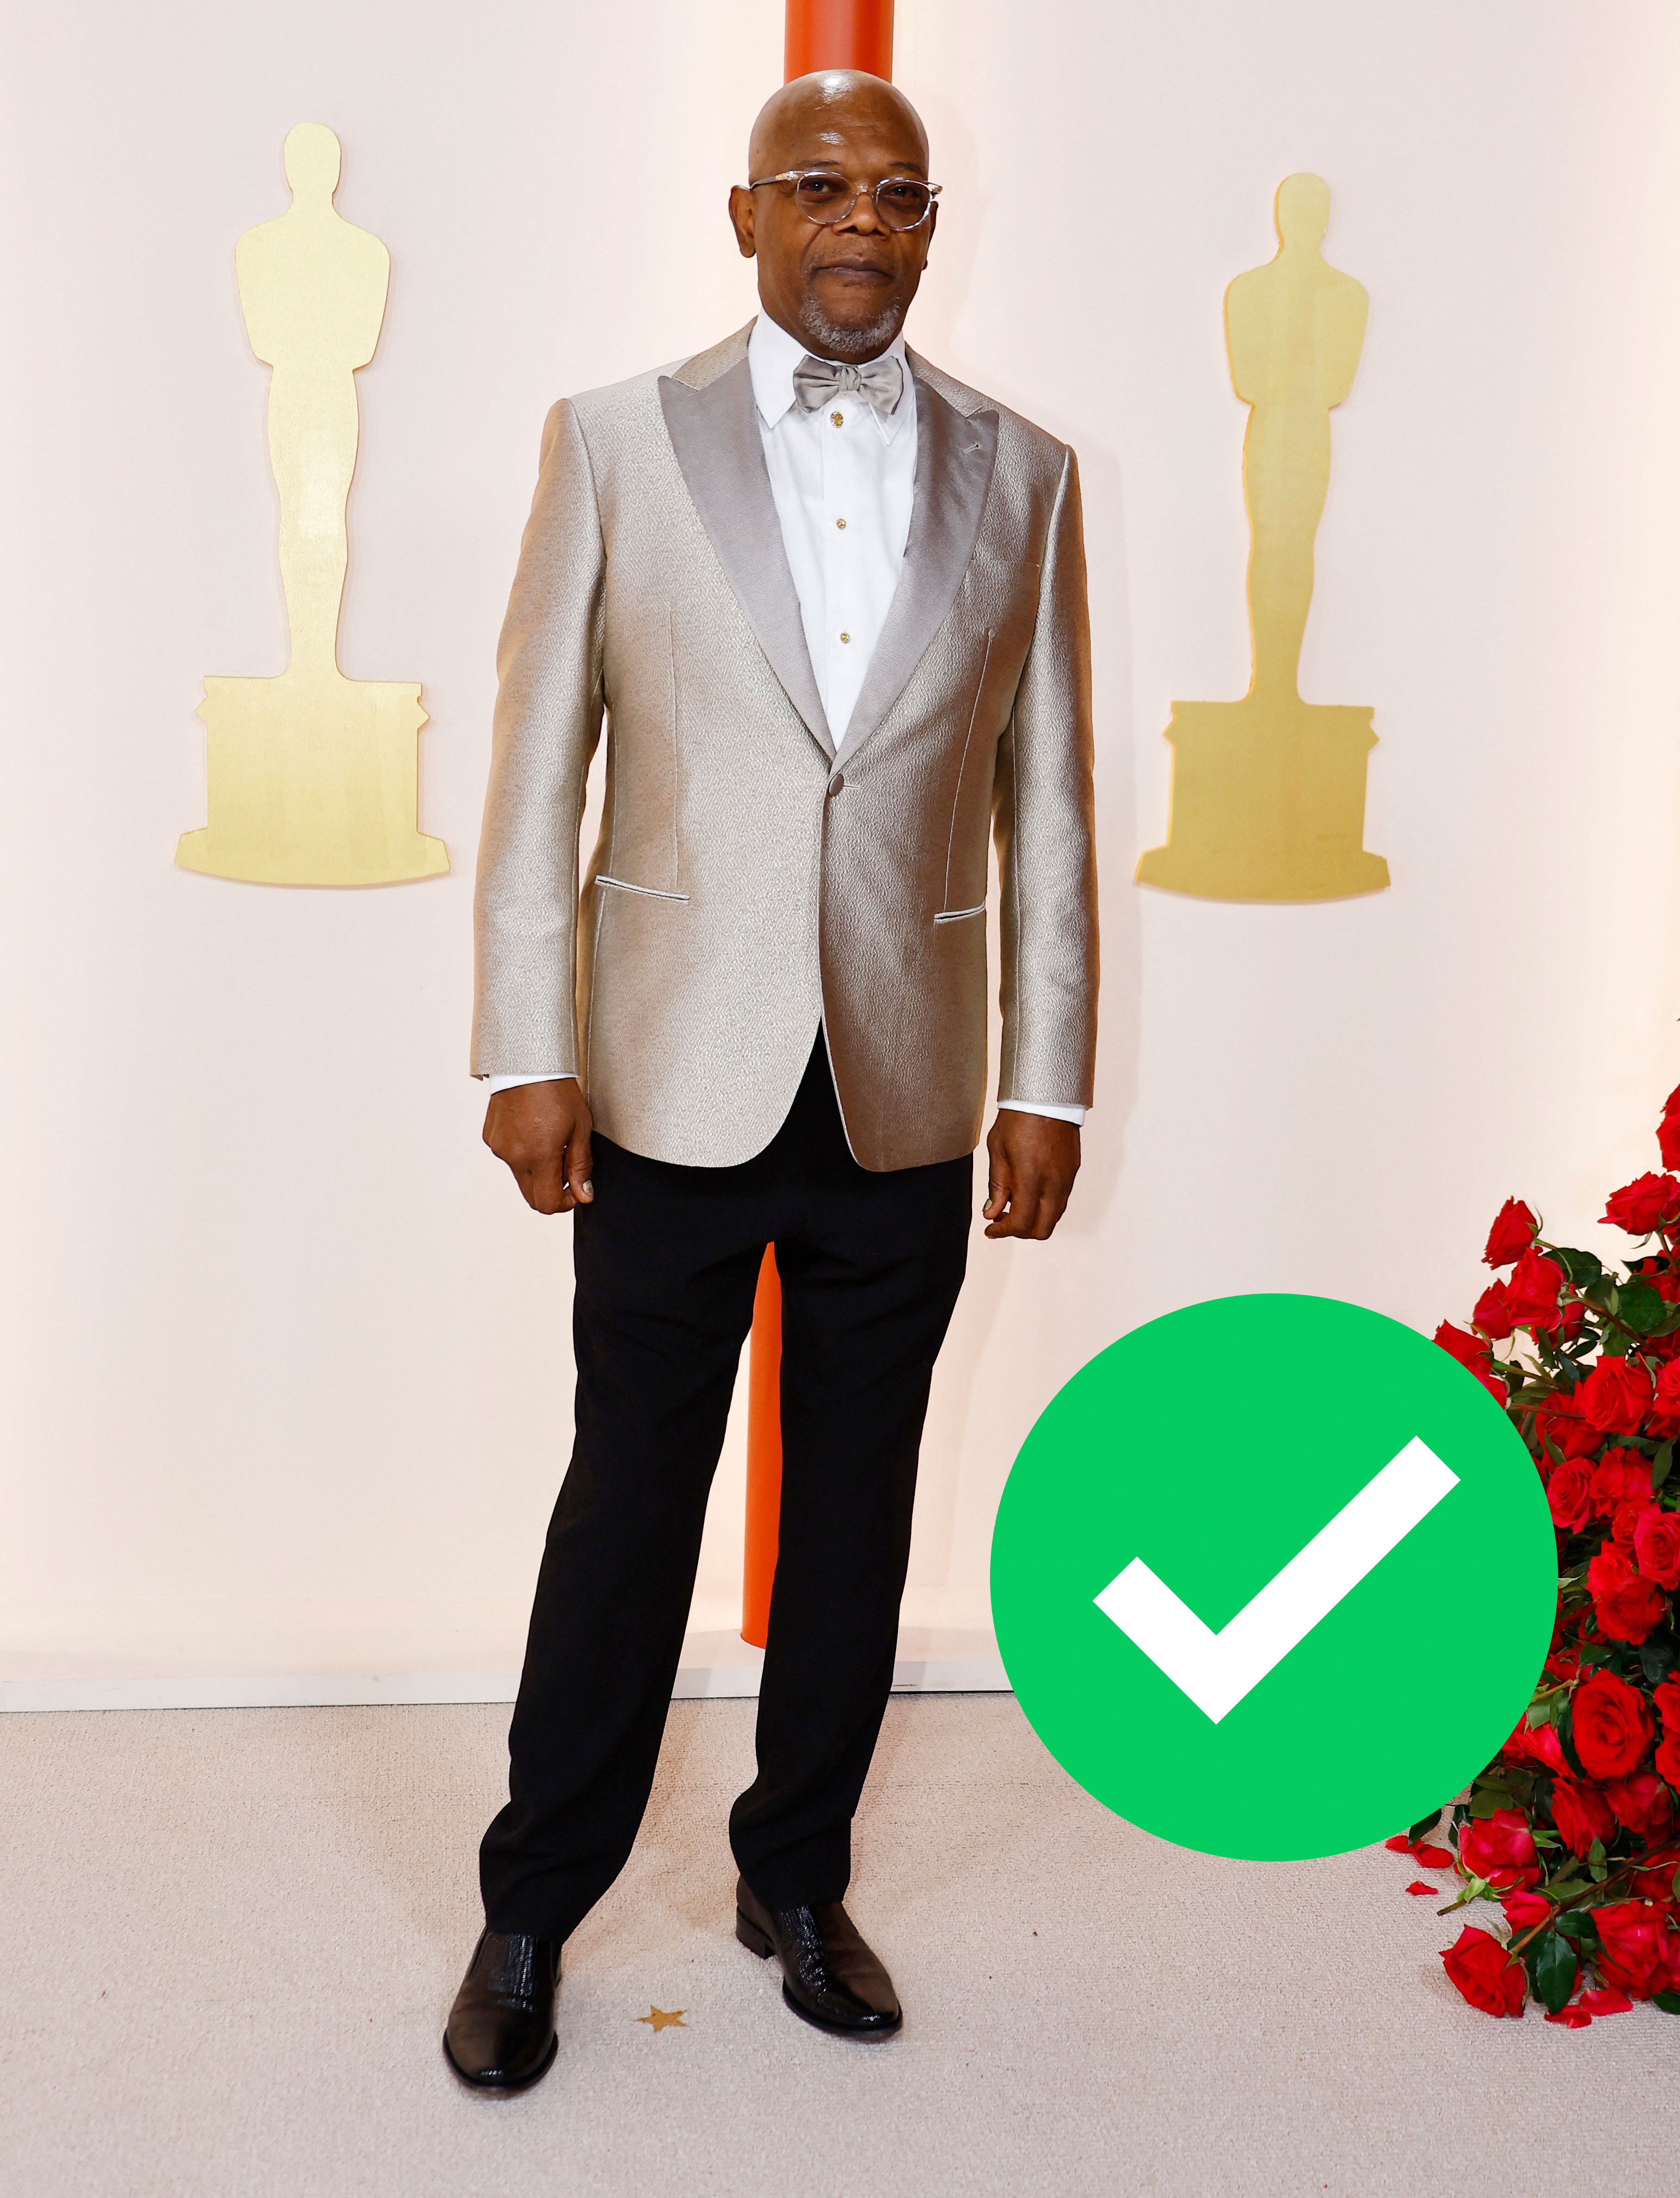 El legendario actor Samuel L. Jackson dejó de lado los colores neutros y optó por una chaqueta plateada